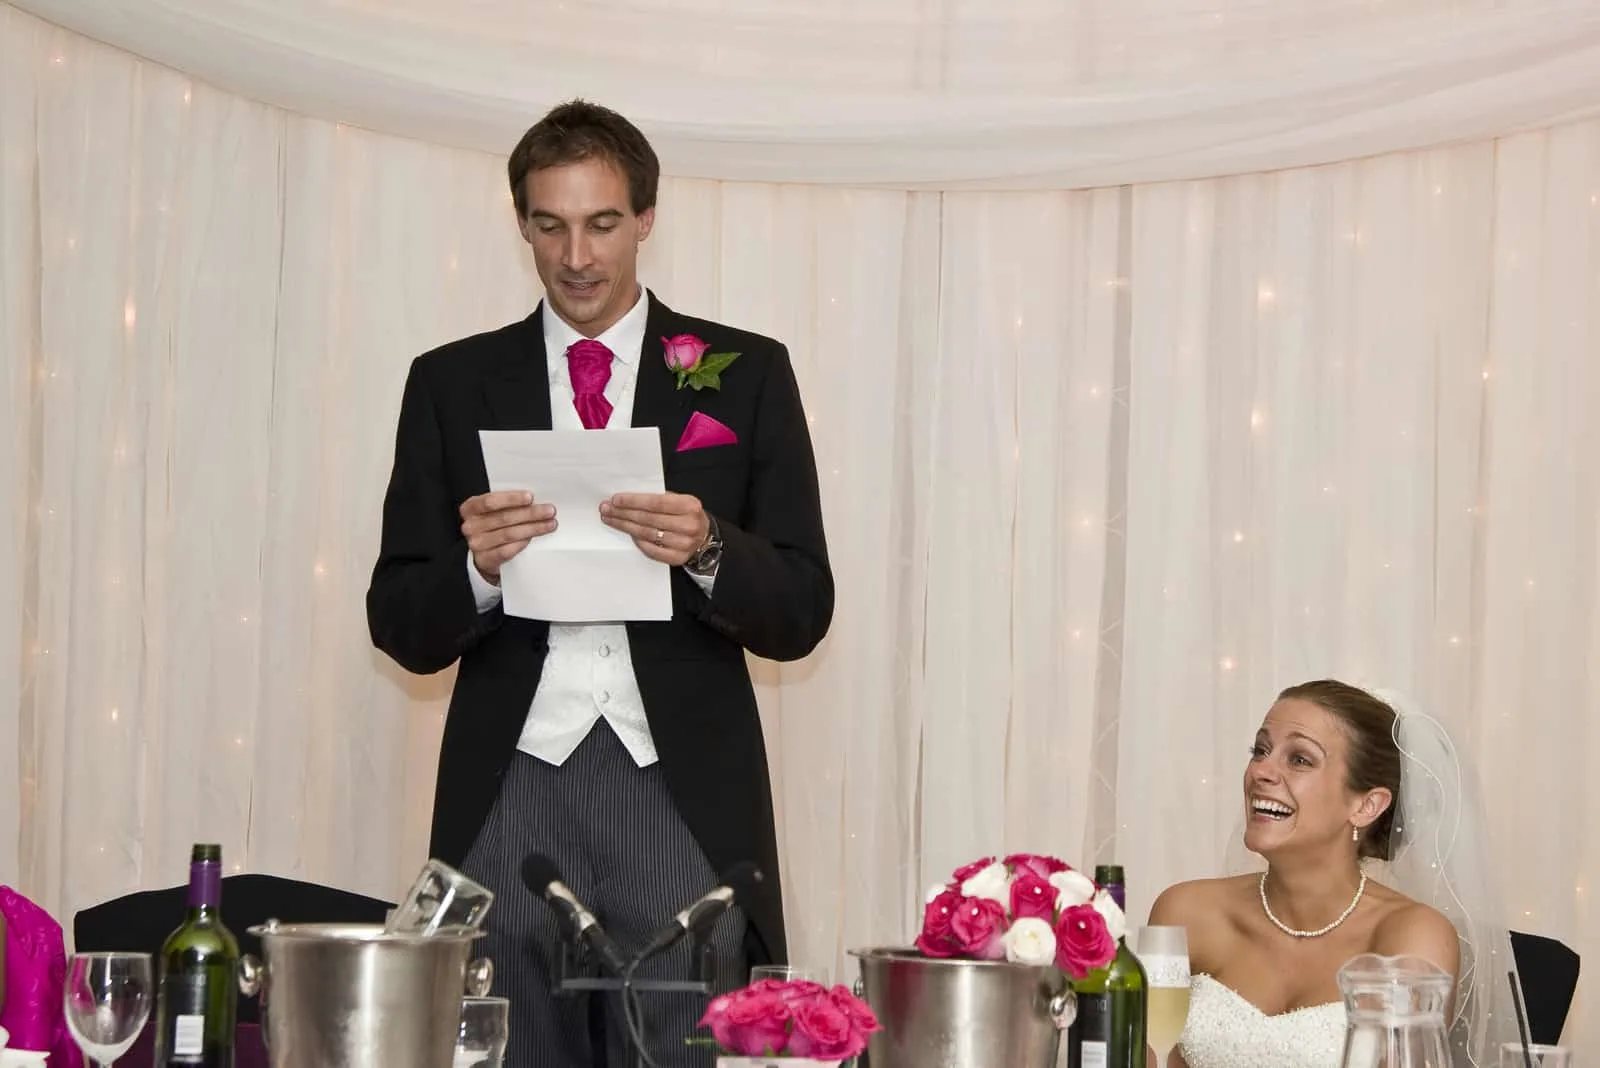 Die Braut reagiert auf die Rede des Bräutigams während einer echten Hochzeitszeremonie